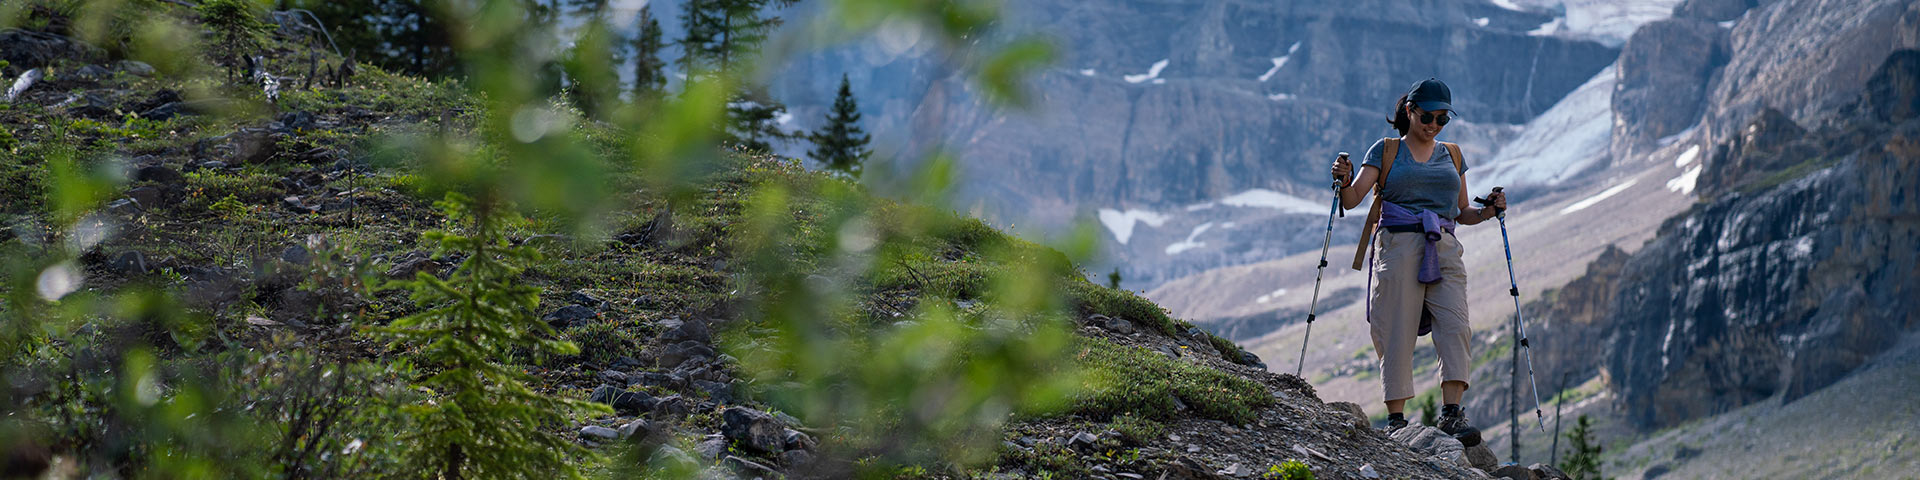 Un randonneur avec des bâtons en descente avec des montagnes et des glaciers en arrière-plan.